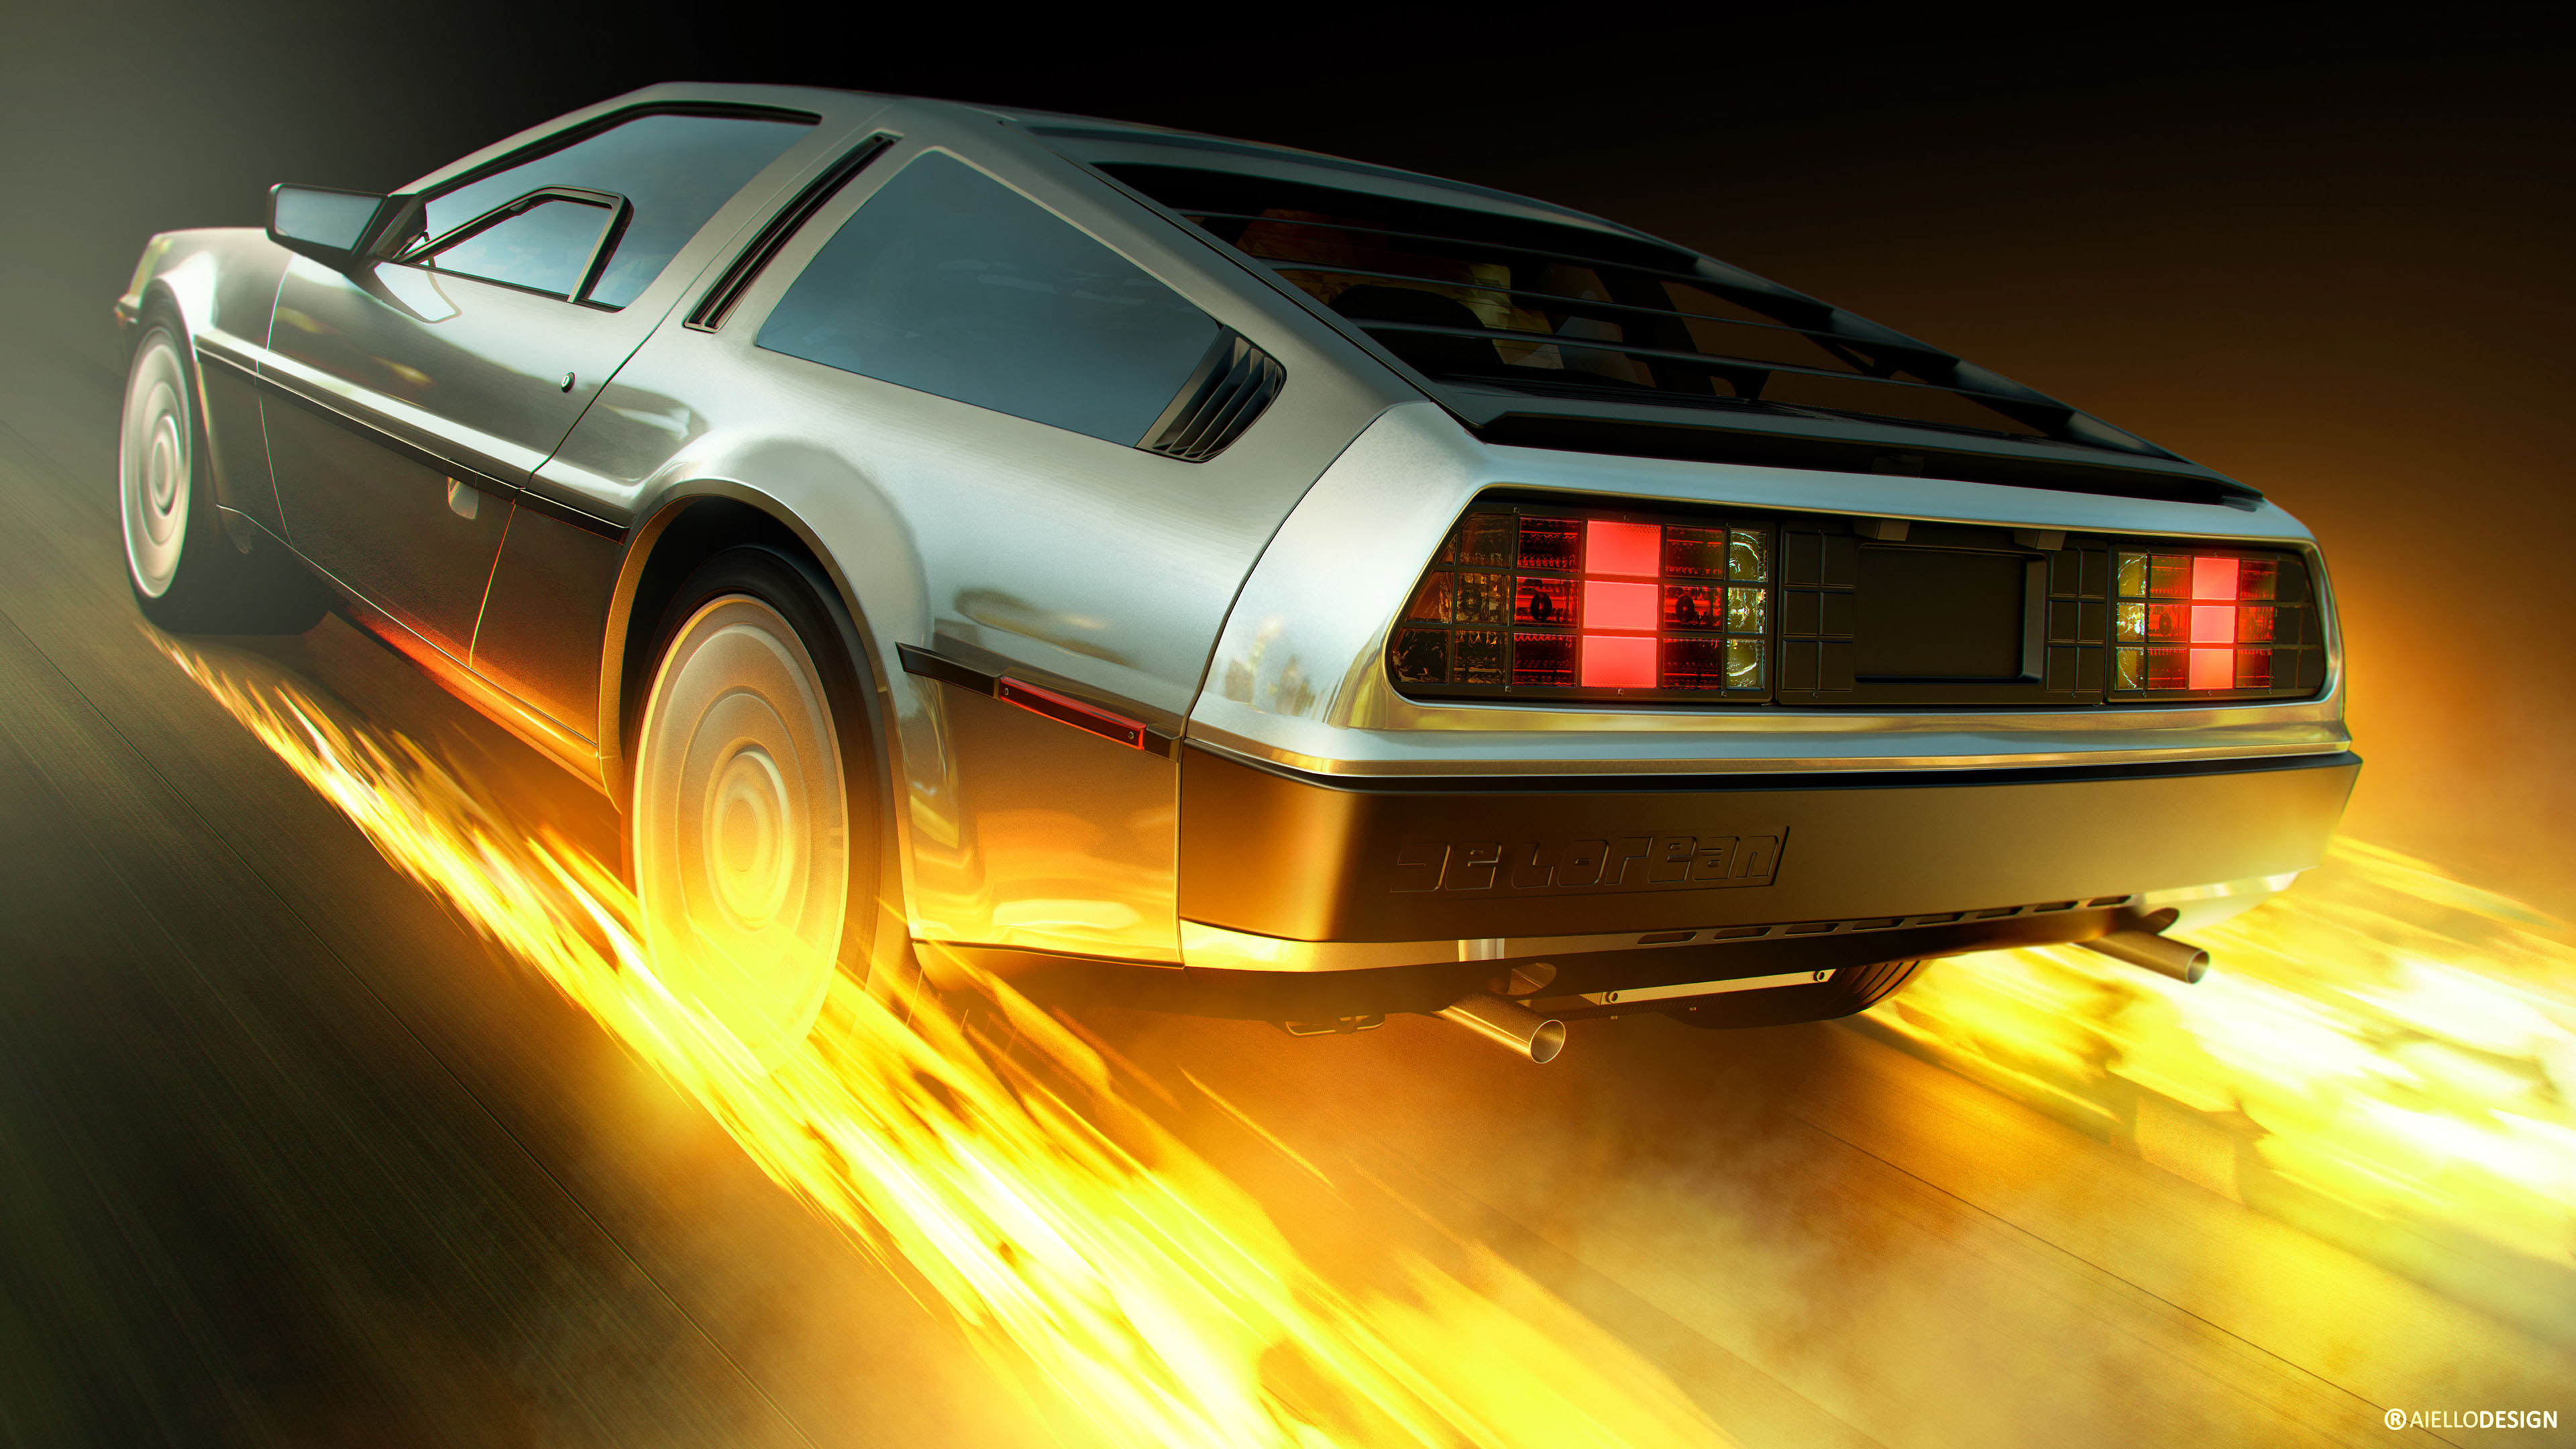 DeLorean time machine Artwork 4K